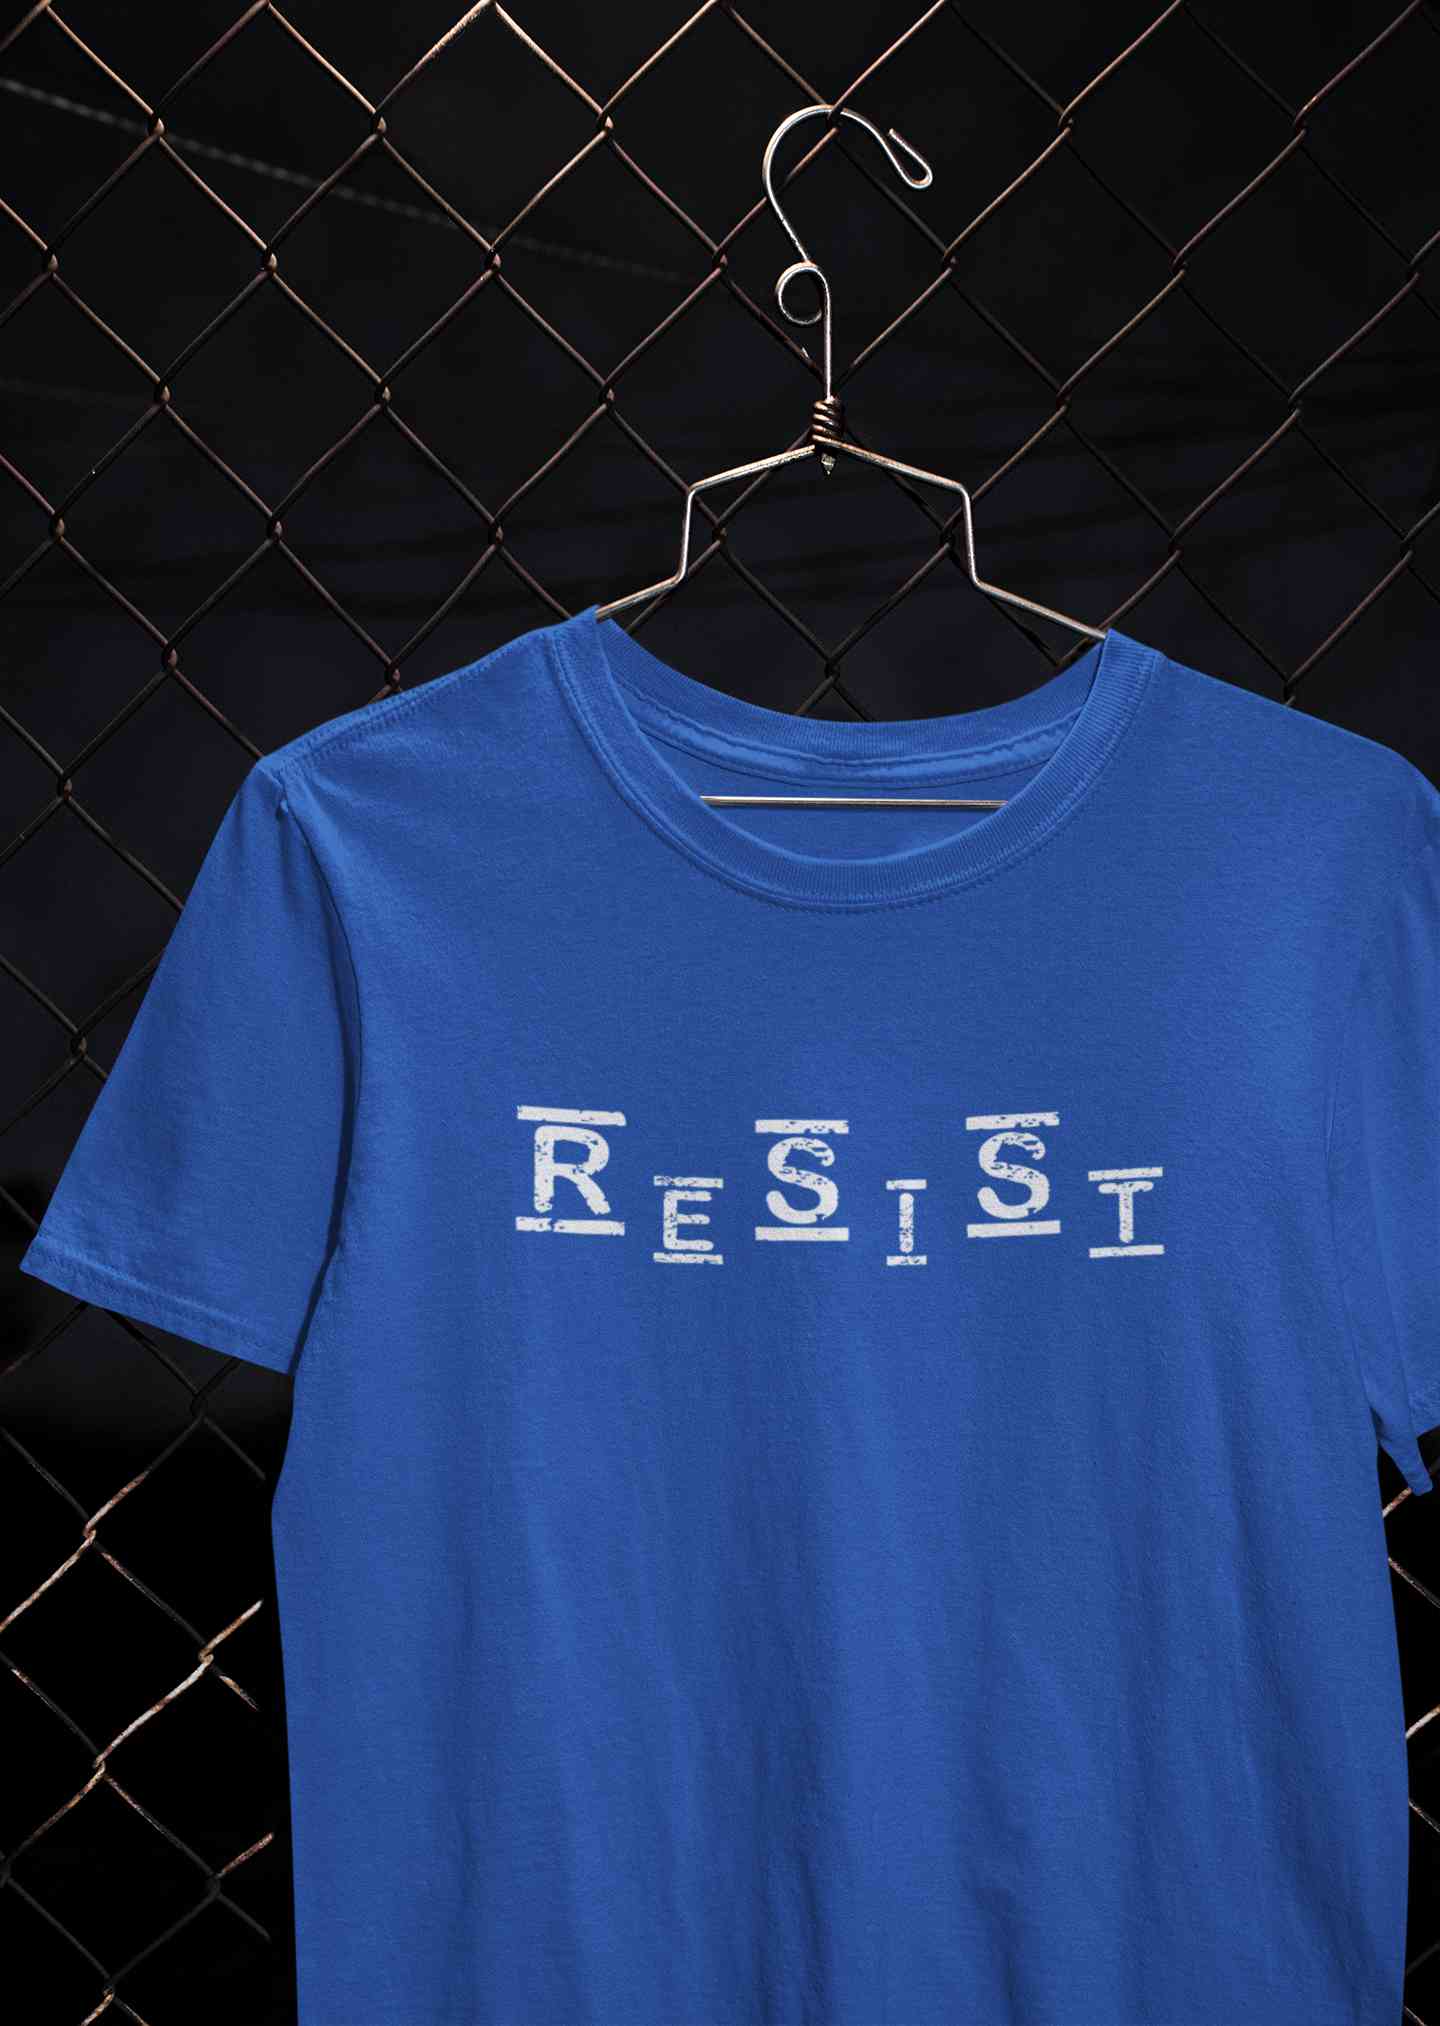 Resist Mens Half Sleeves T-shirt- FunkyTeesClub